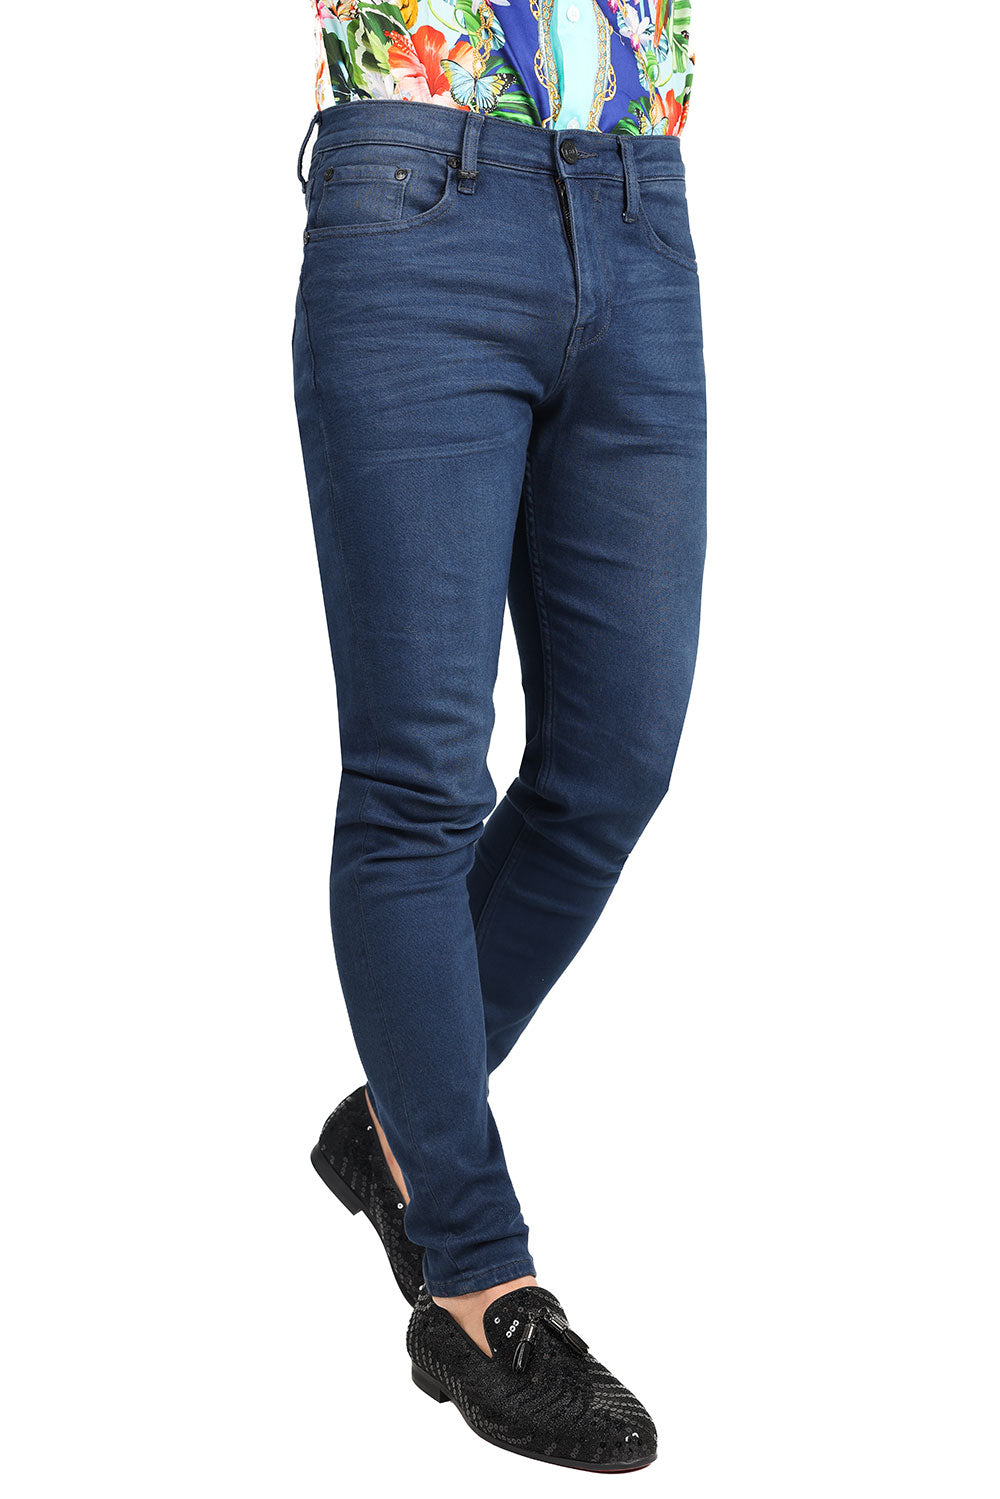 Barabas Men's Solid Color Slim Fit Stretch Washed Jeans 2JE11SL Medium Blue